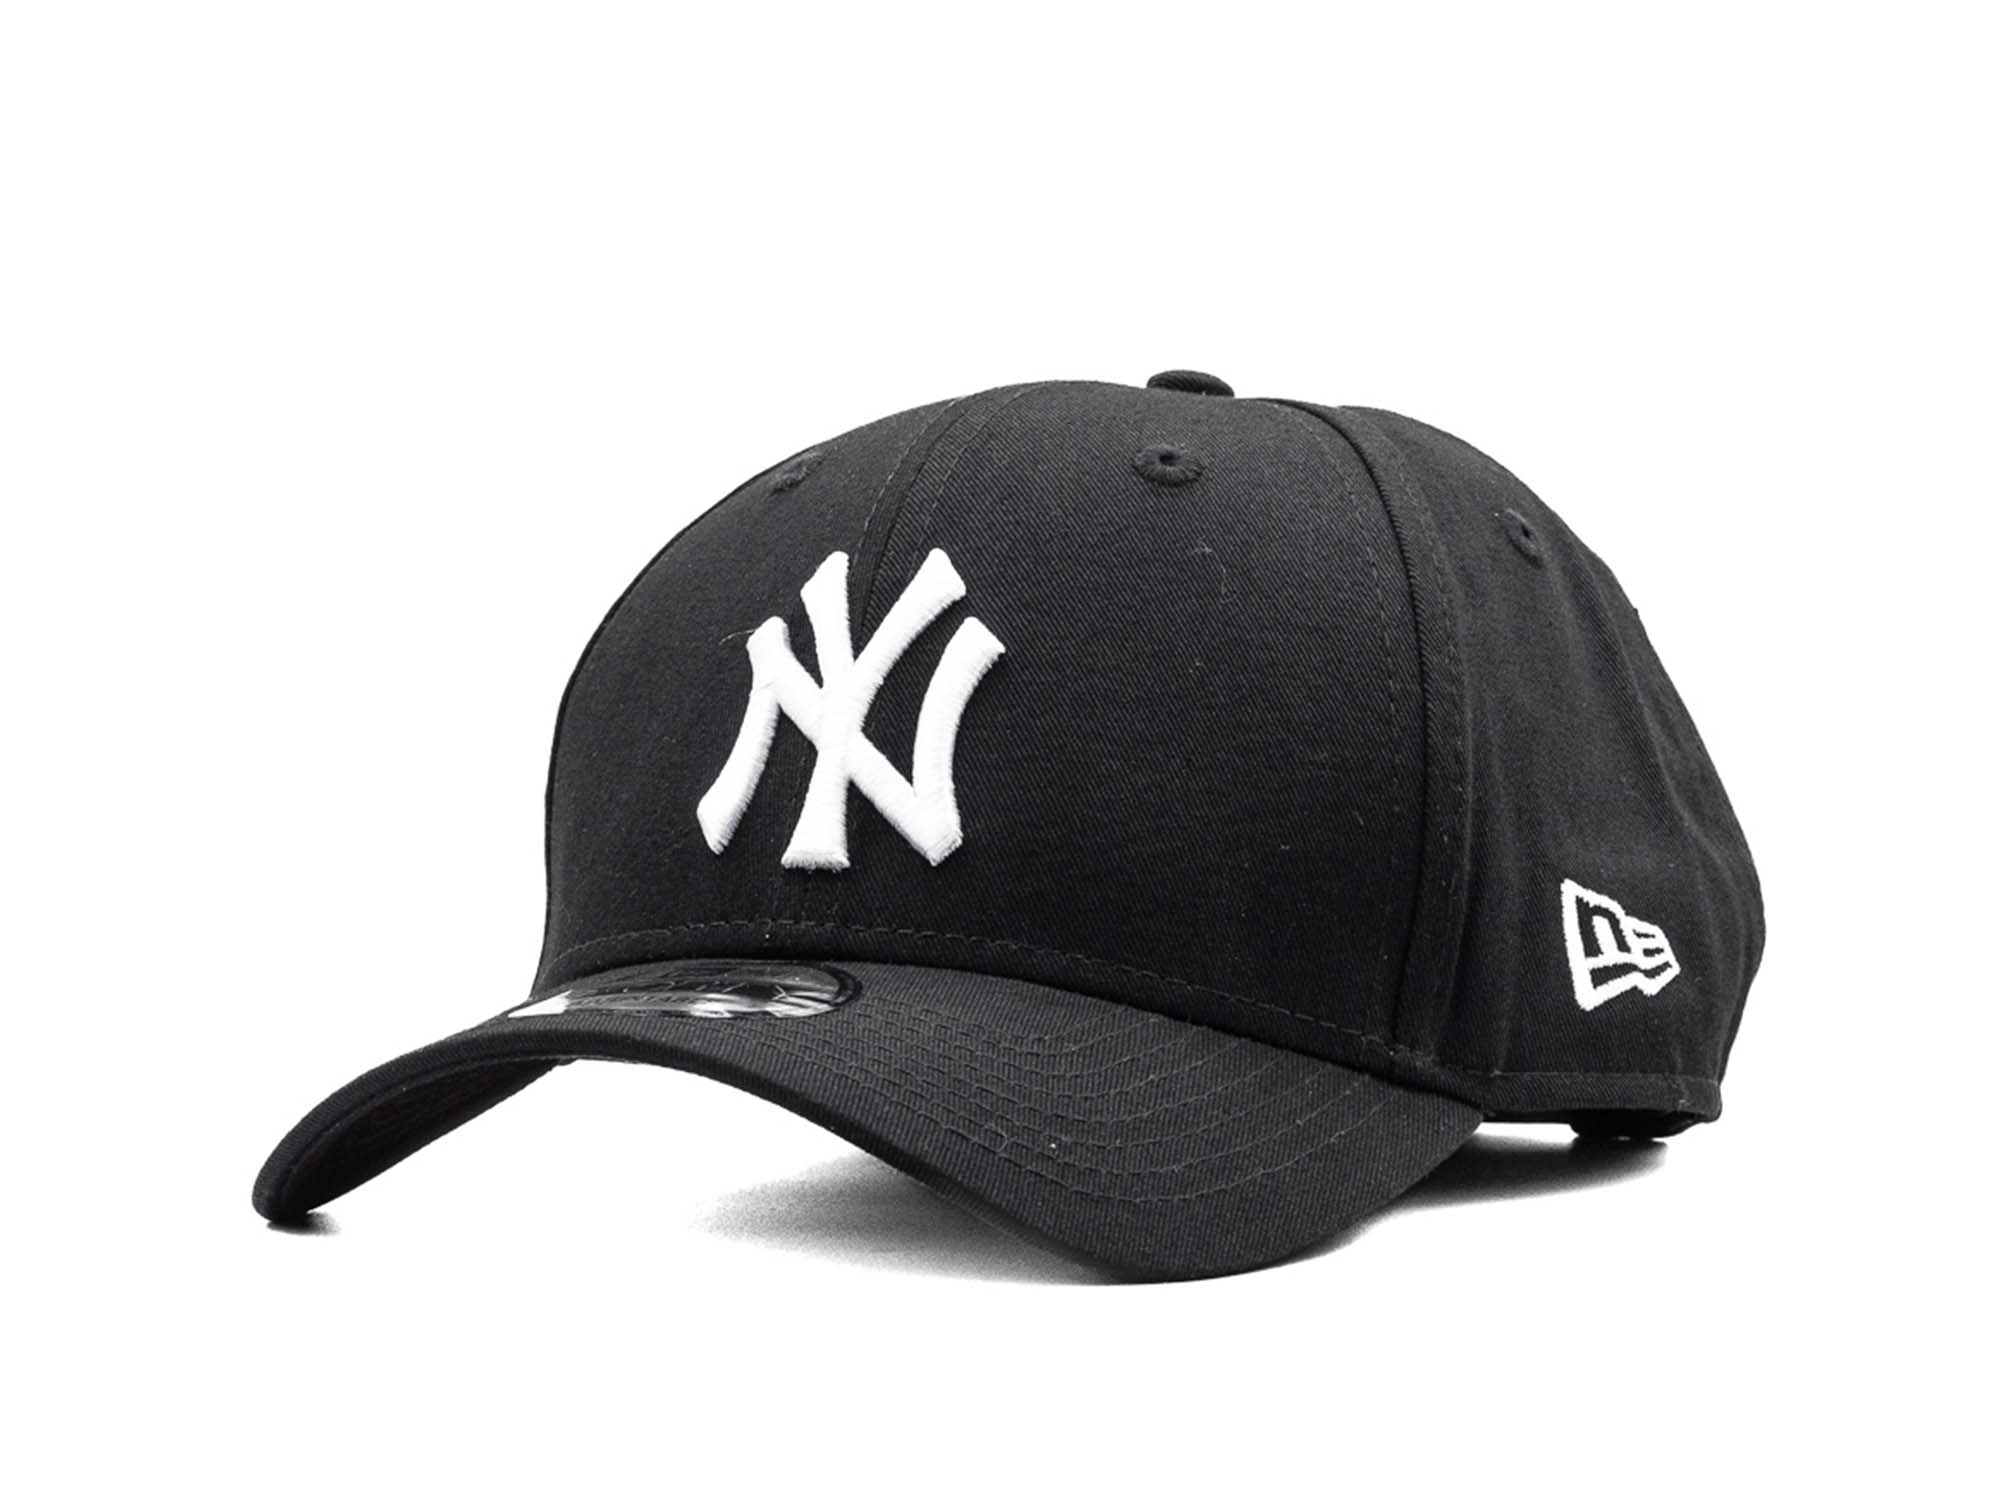 Jockey New Era Mlb 940 New York Yankees Unisex Negro